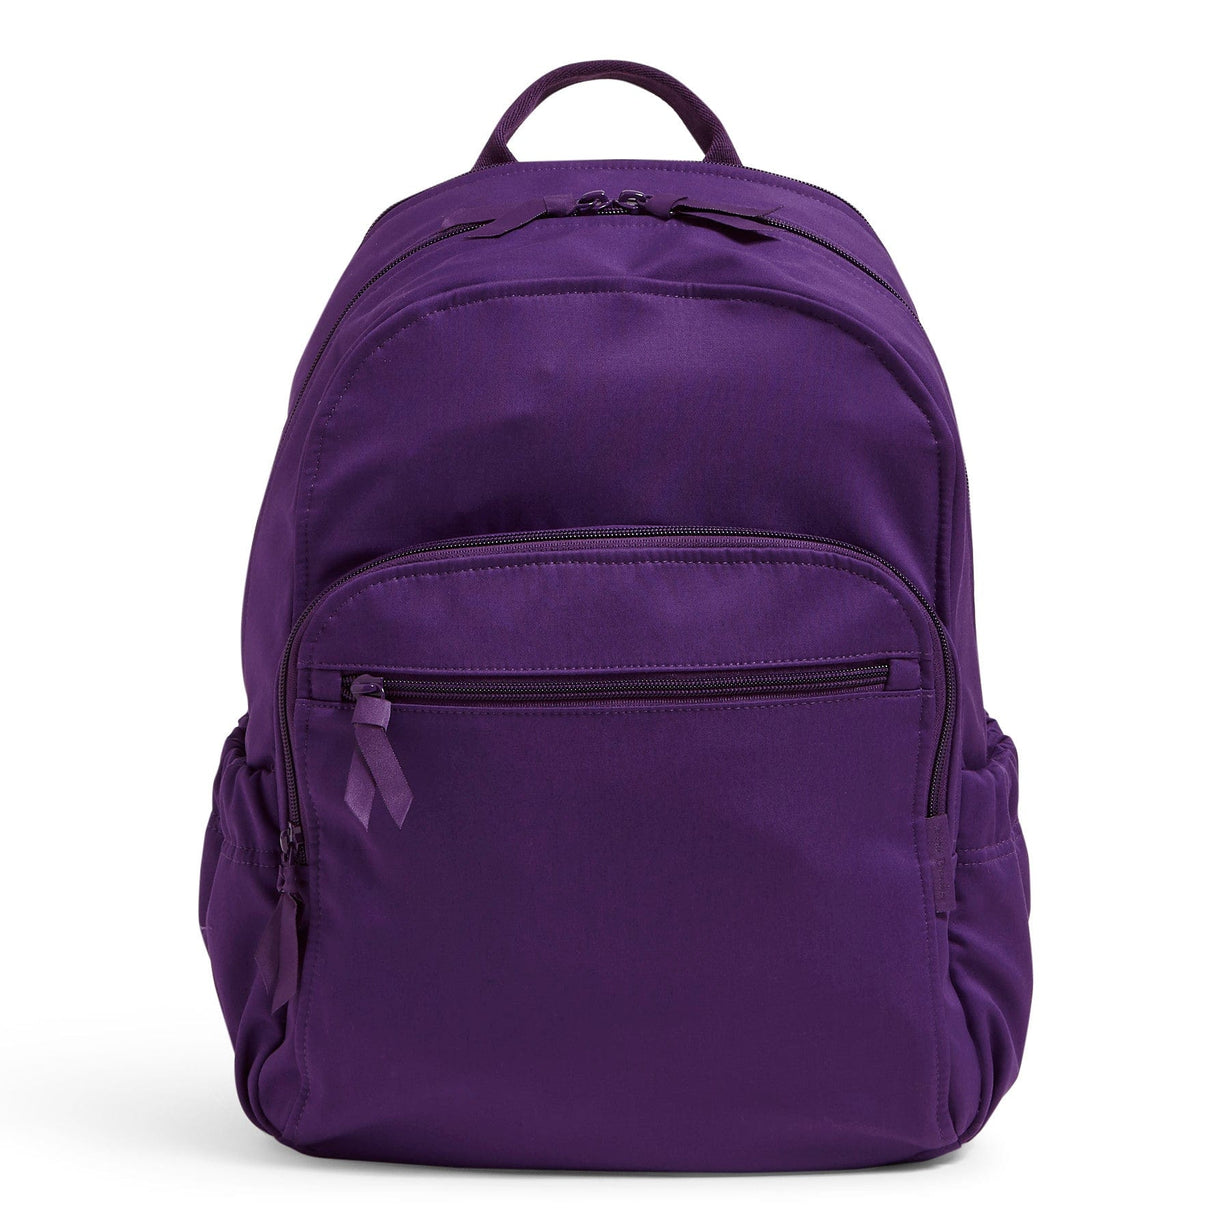 Vera Bradley Outlet | Purple Campus Backpack – Vera Bradley Outlet